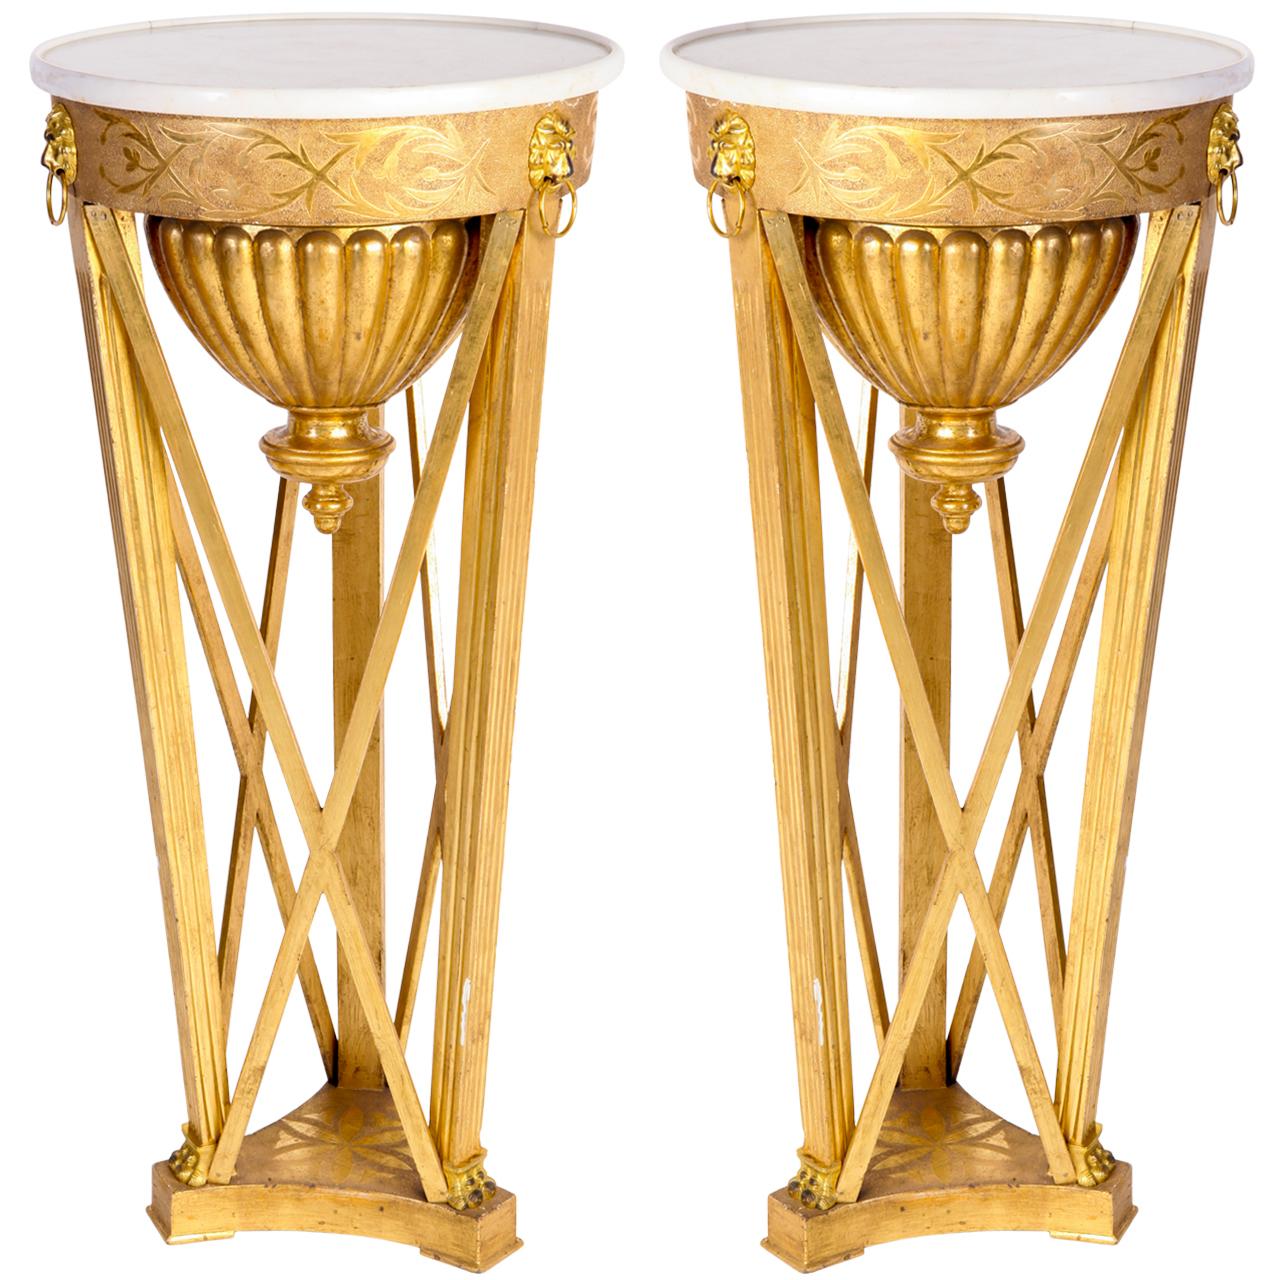 Très belle paire de guéridons italiens néoclassiques.
En bois doré, avec un plateau en marbre blanc et des ornements montés en bronze doré.
Disponible en 3 paires.
Provenance d'un domaine aristocratique de Toscane.